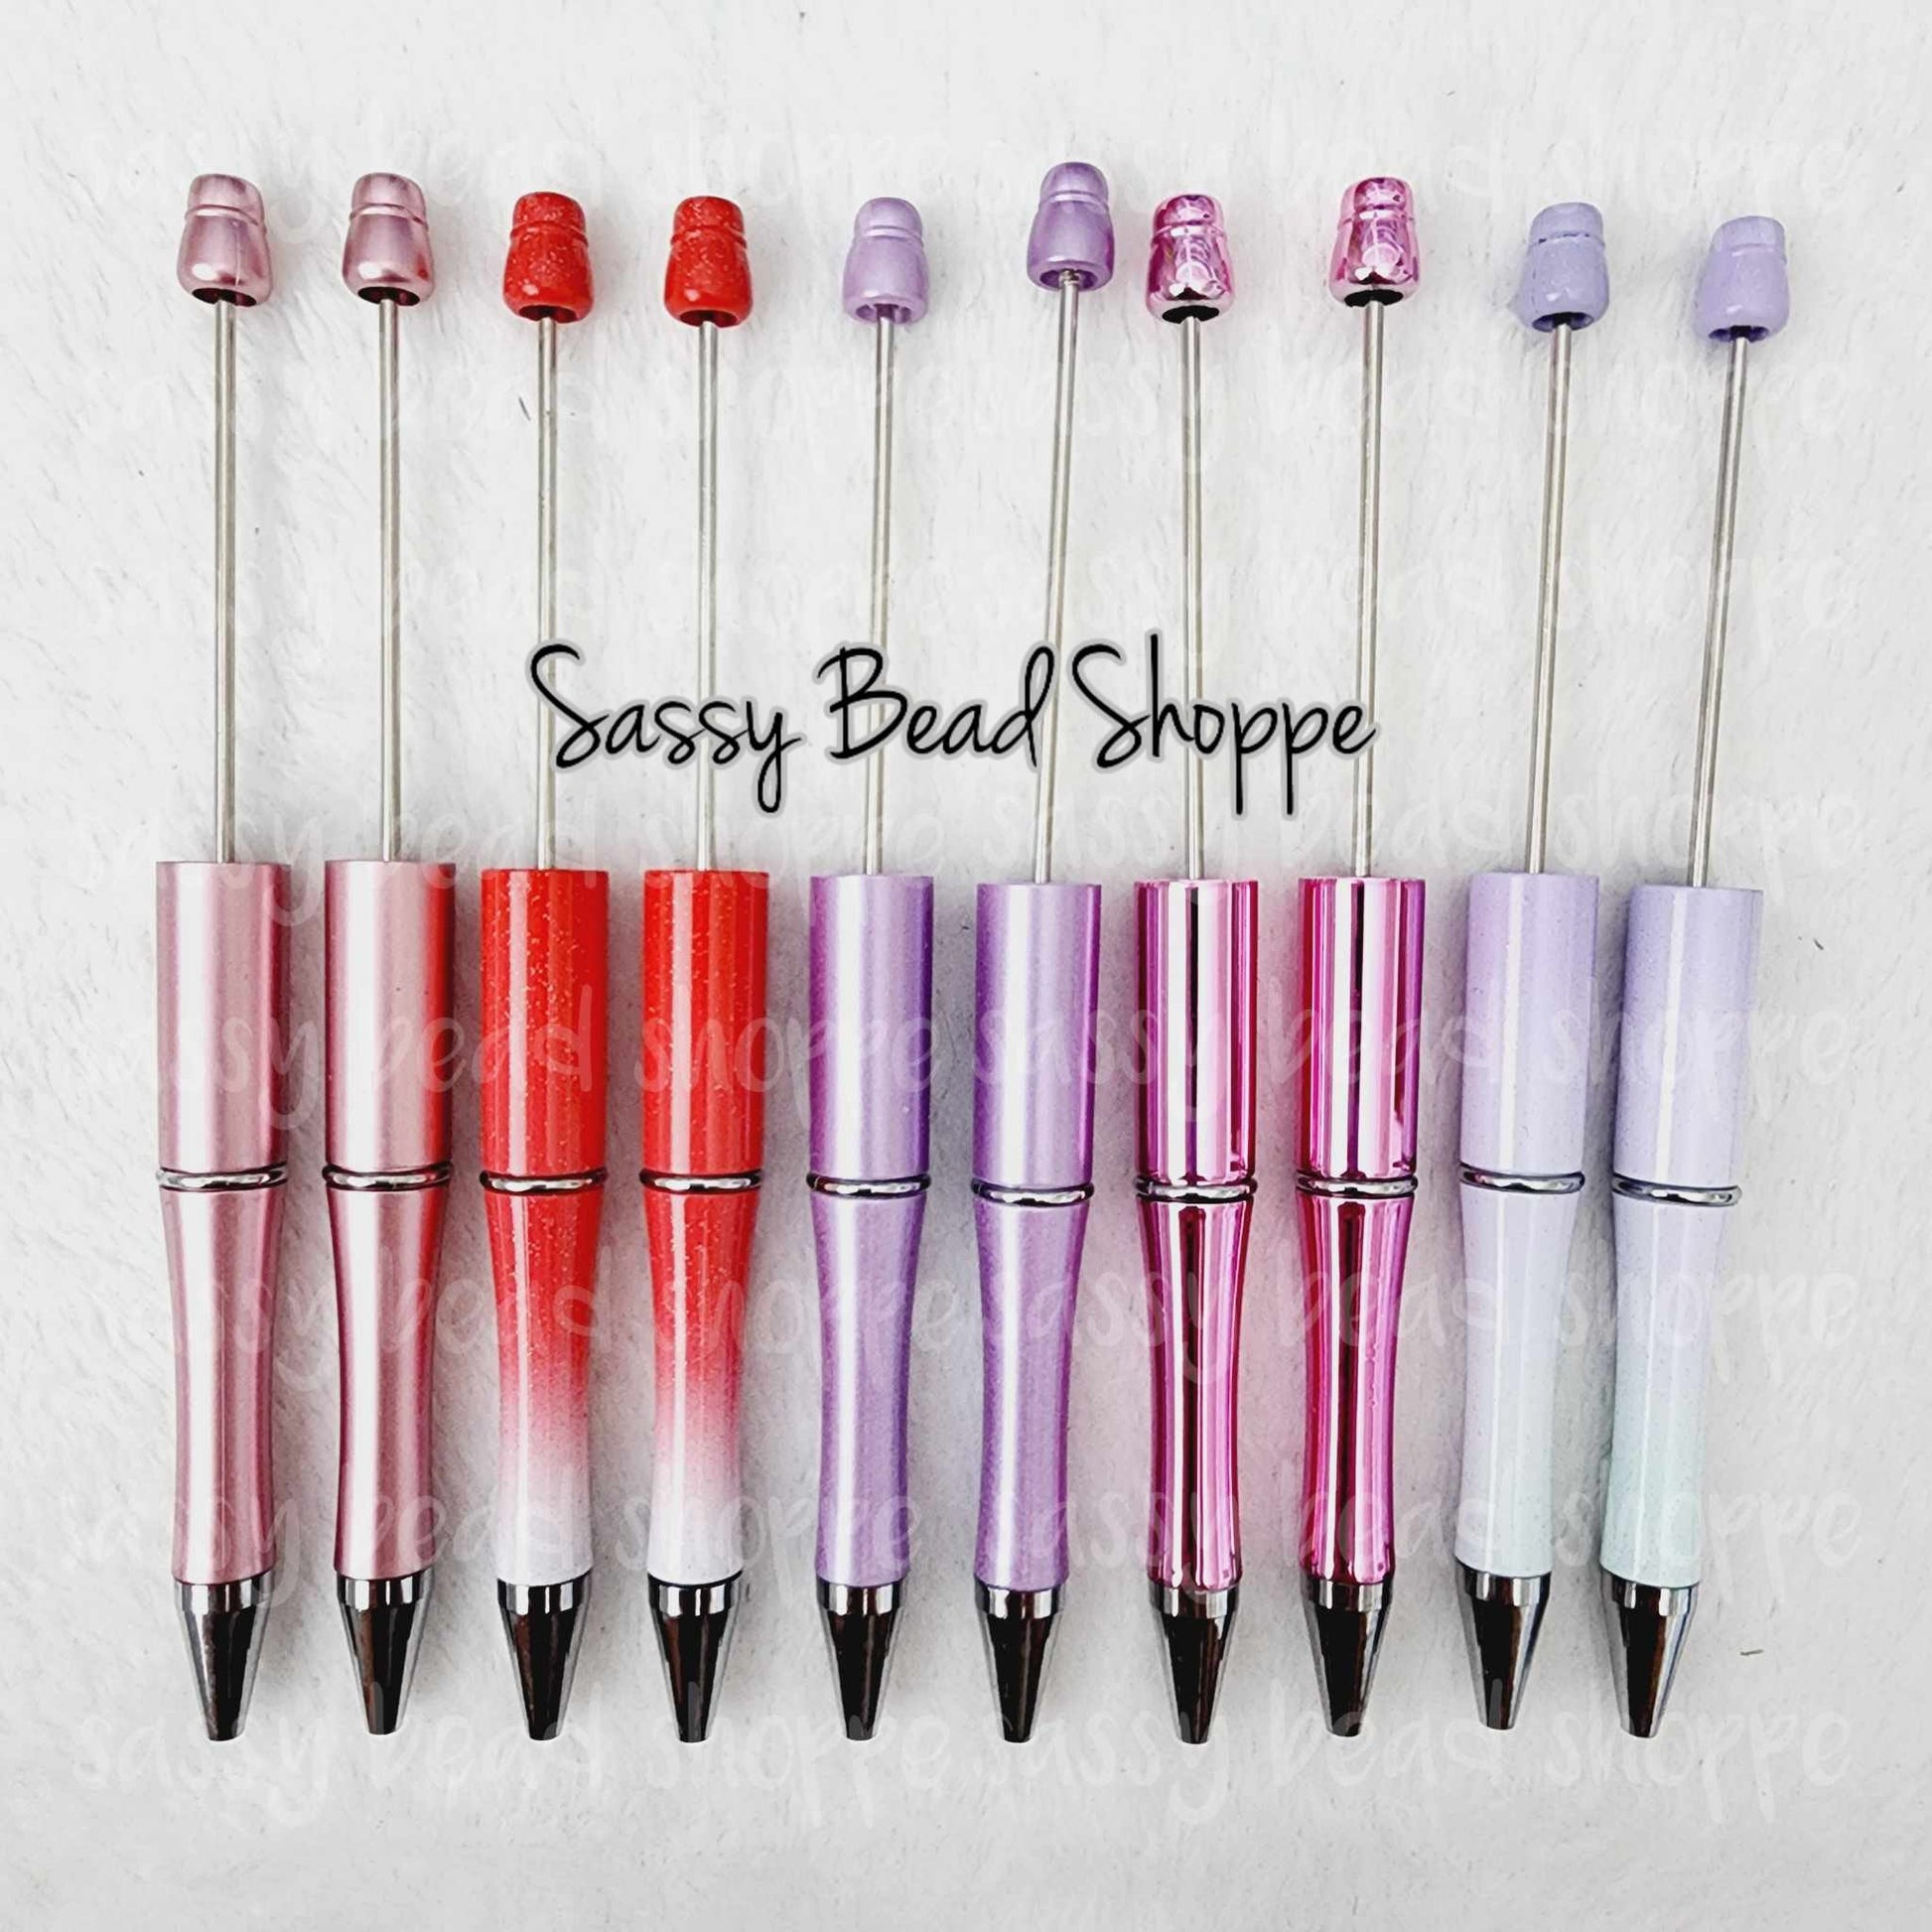 Sassy Bead Shoppe Love Stinks Pen Pack Pack of 10